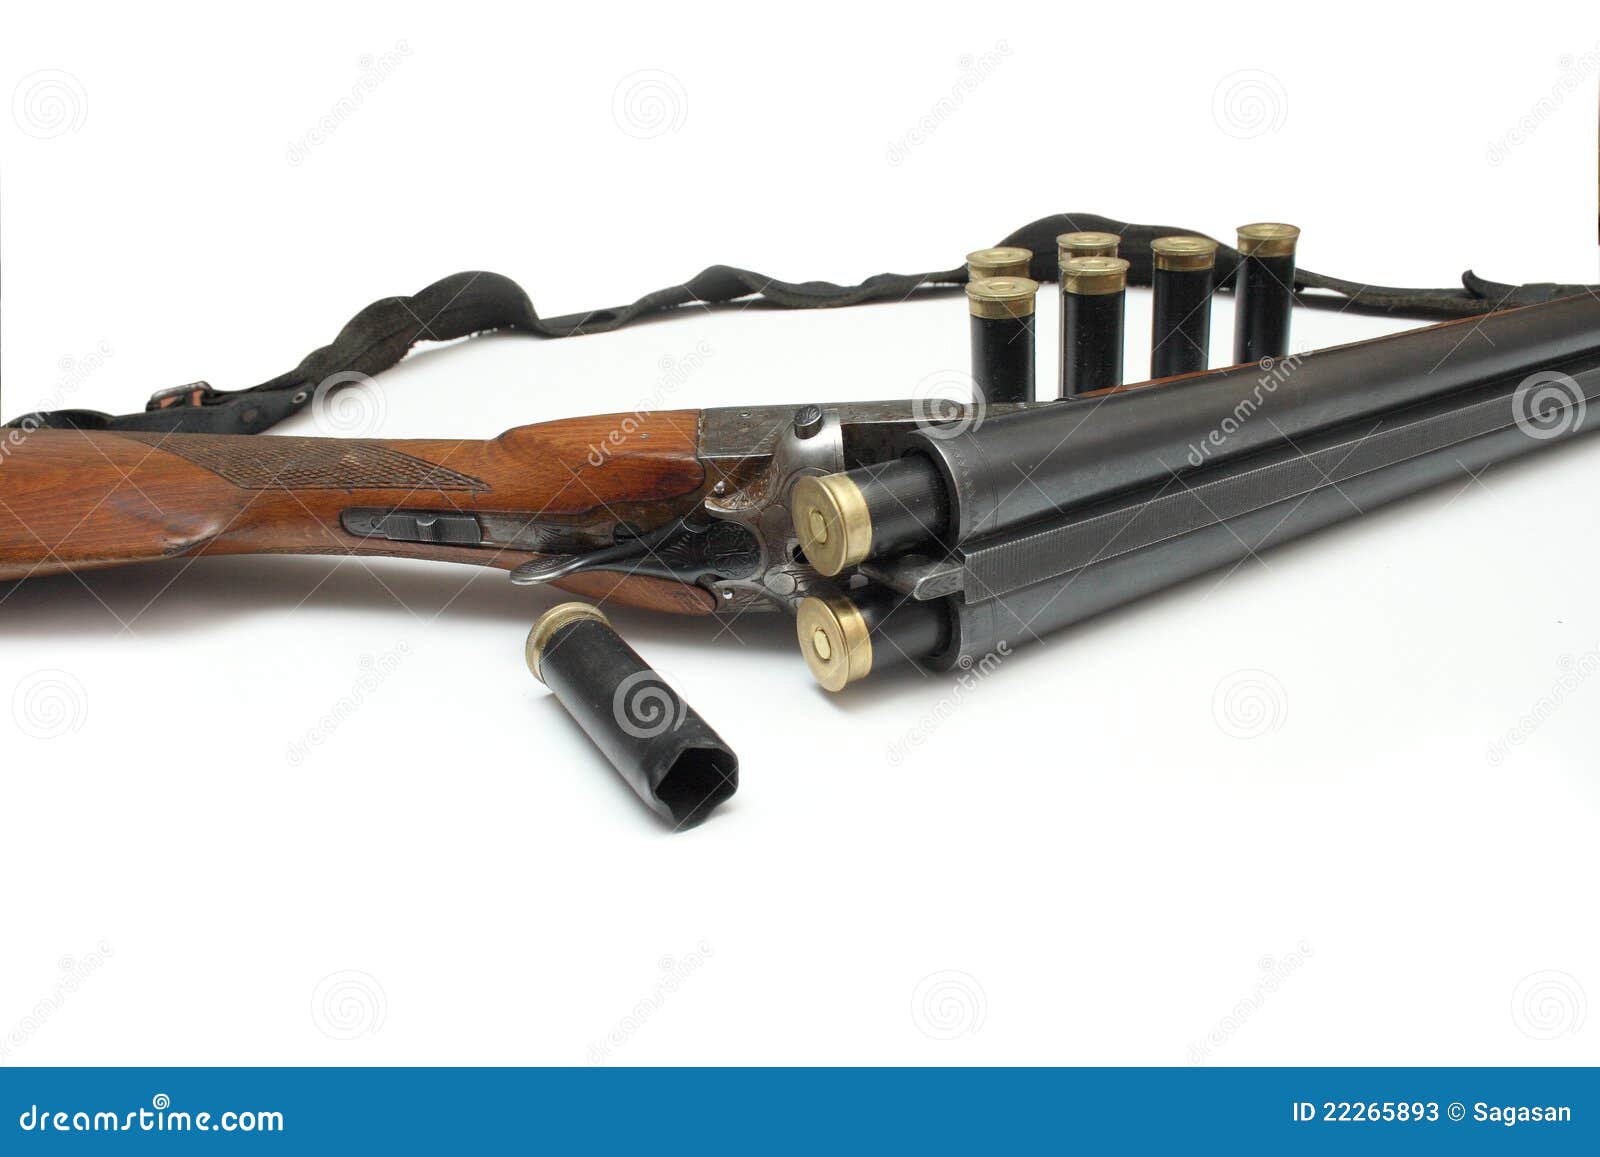 当西洋猎枪遇到龙纹雕刻 Beretta shotgun - 普象网